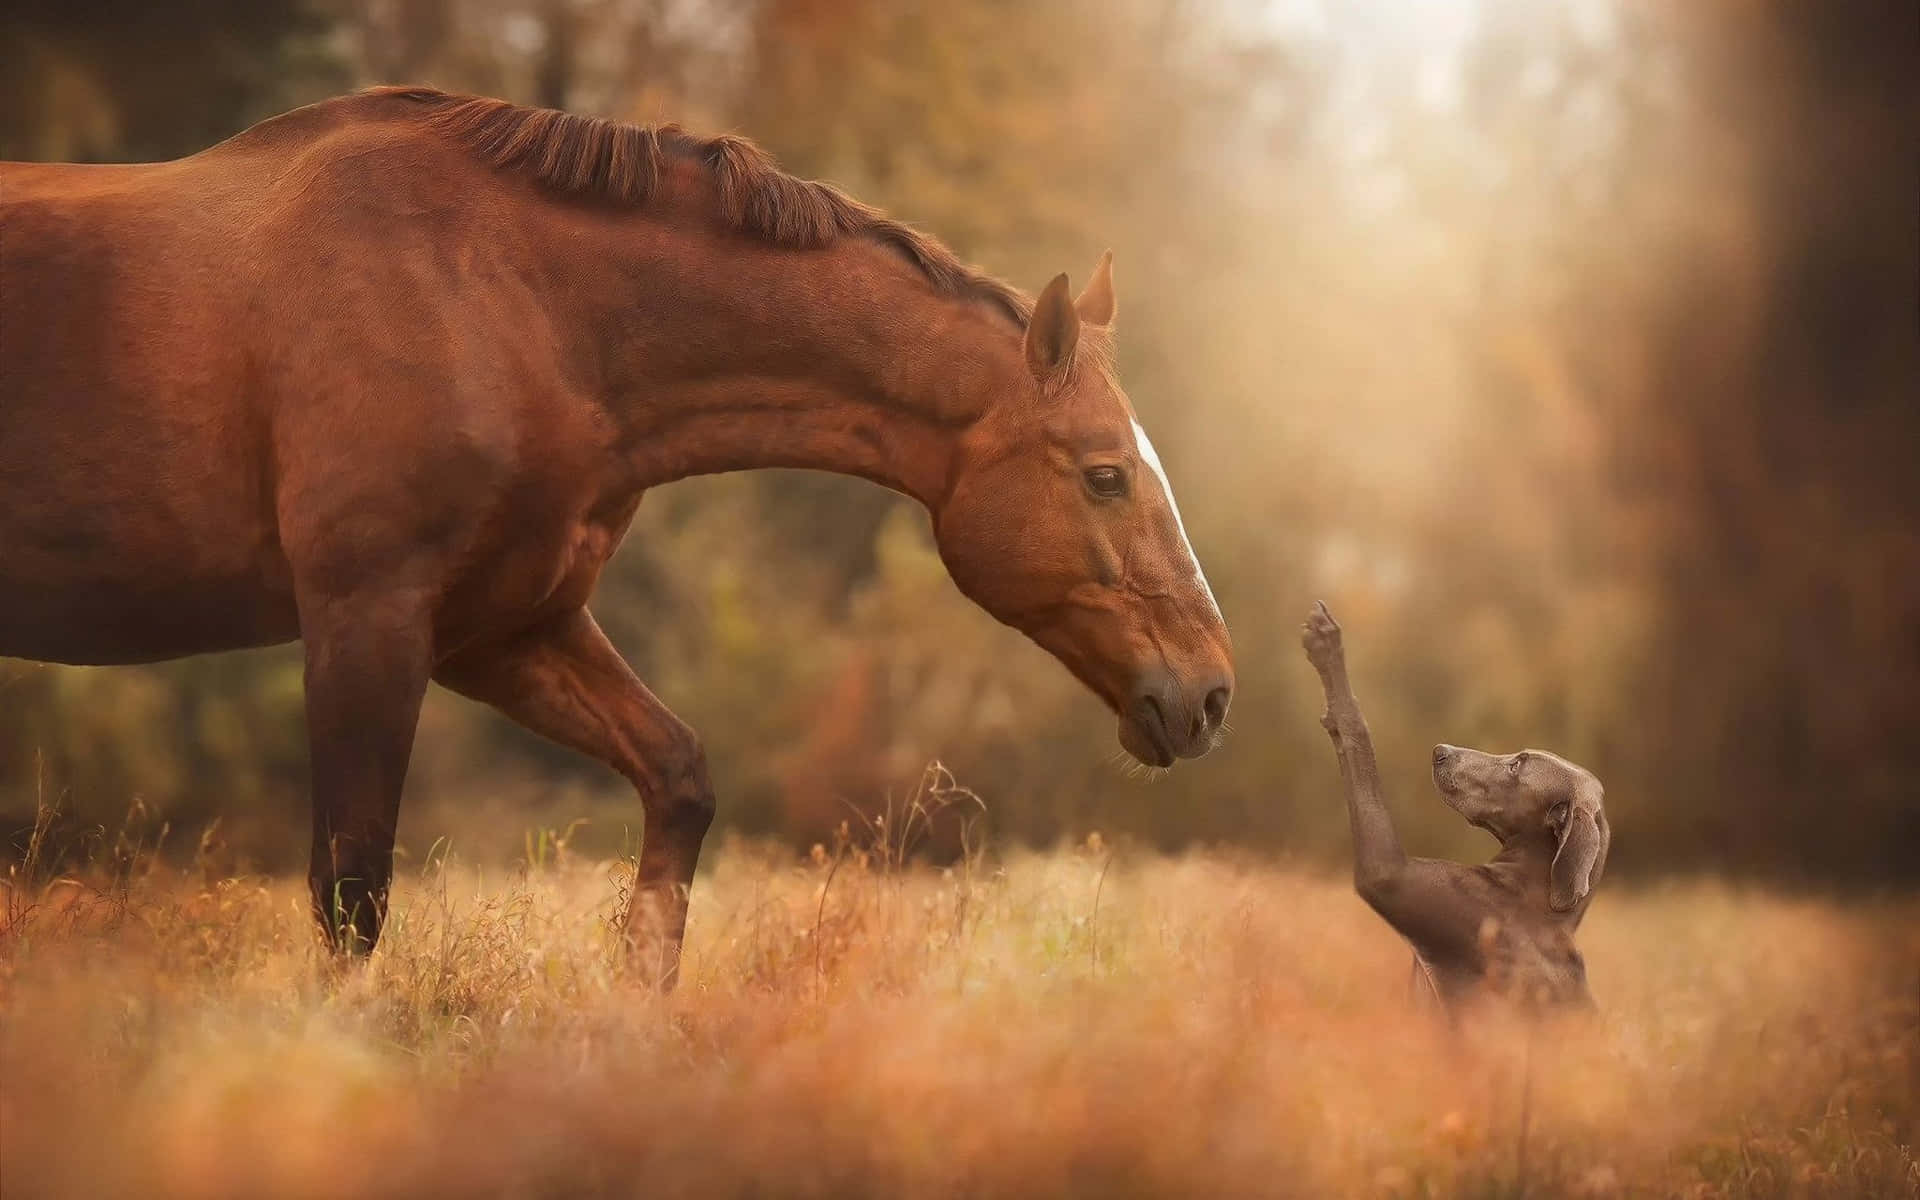 “A Cute Horse Enjoying Some Grass"